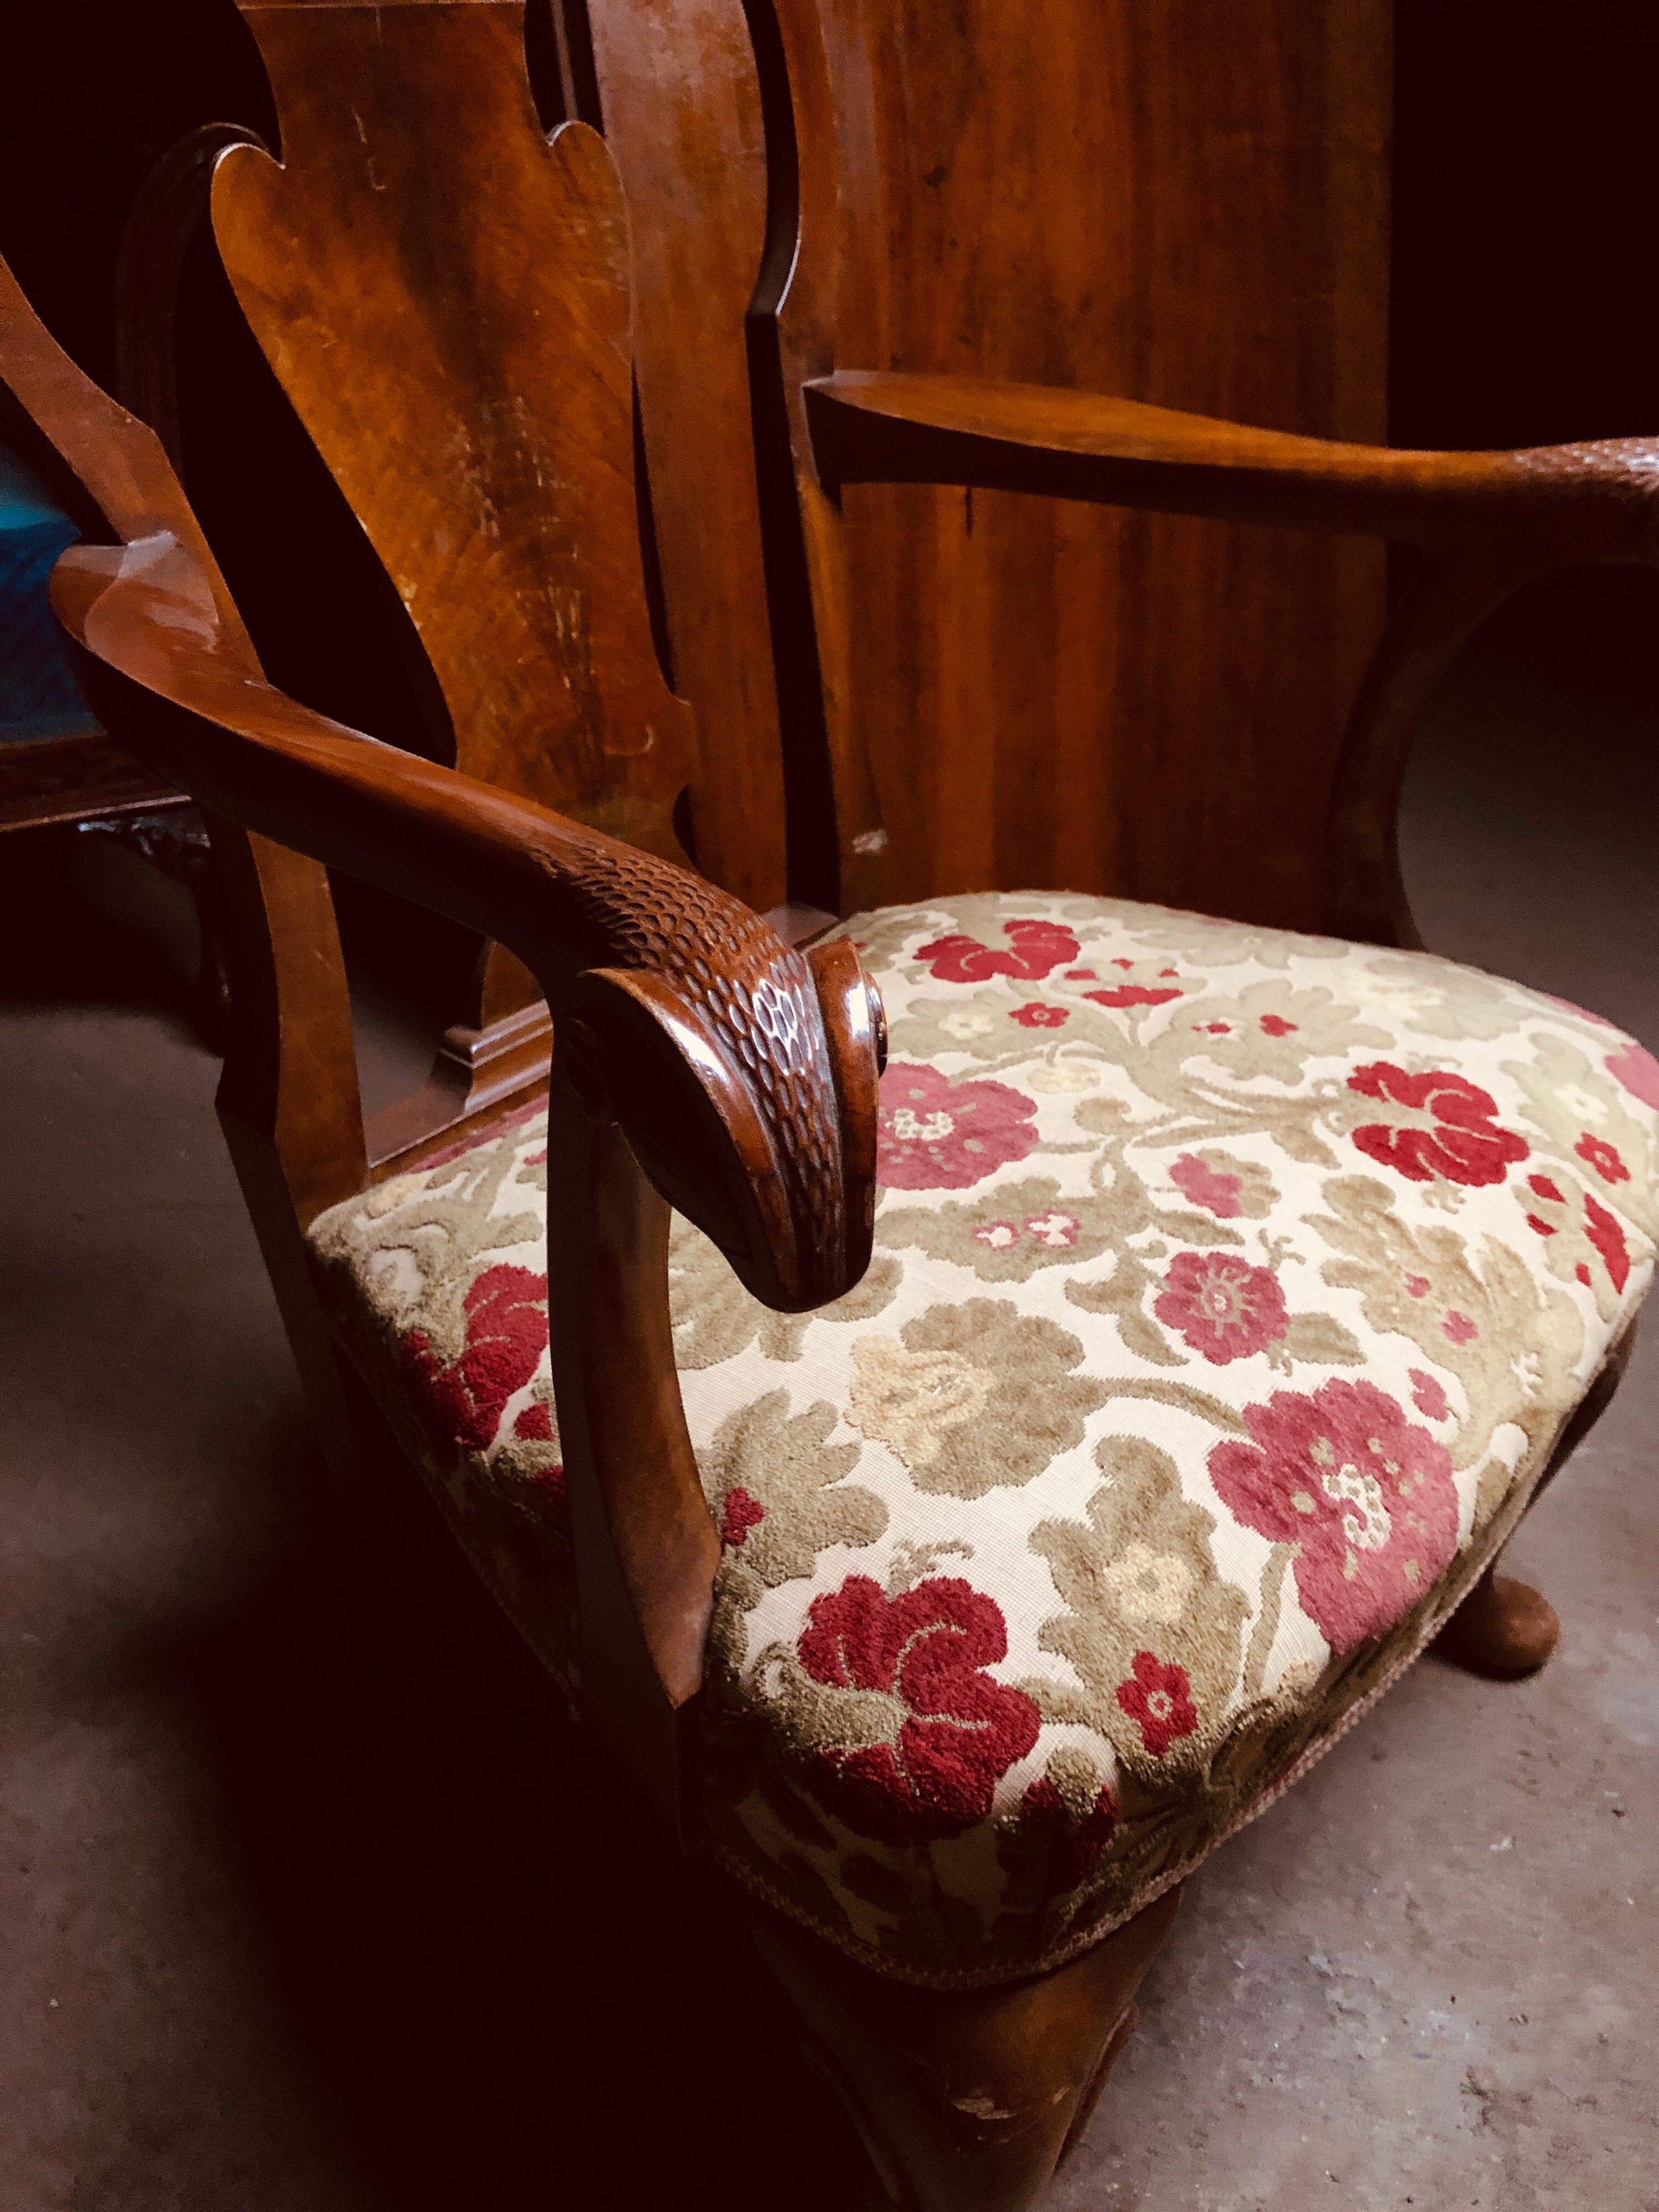 Paar französische Mahagoni-Sessel mit Originalpolsterung.
Die Armlehnen sind handgeschnitzt und haben am Ende einen Widderkopf.
Es gibt ein Canapé für zwei Personen, das perfekt dazu passen könnte.
Frankreich, um 1920.